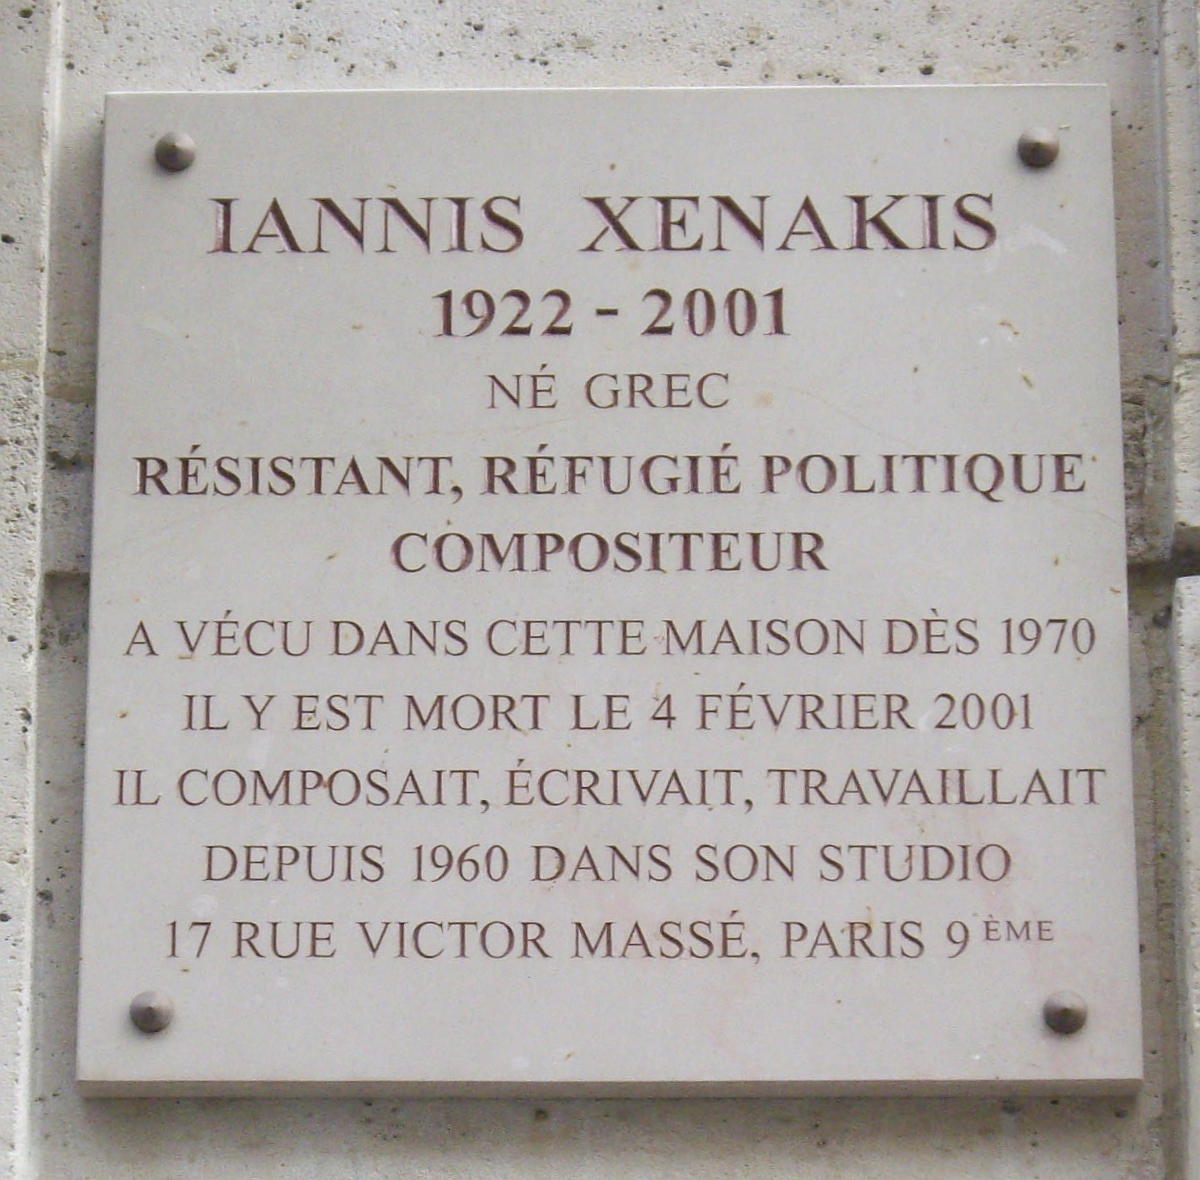 Parenthèse musicale. Je mentionnais hier Iannis Xenakis. Je vous propose, comme ça, en passant, quelques portes d'entrée vers son œuvre touffue. ⬇️